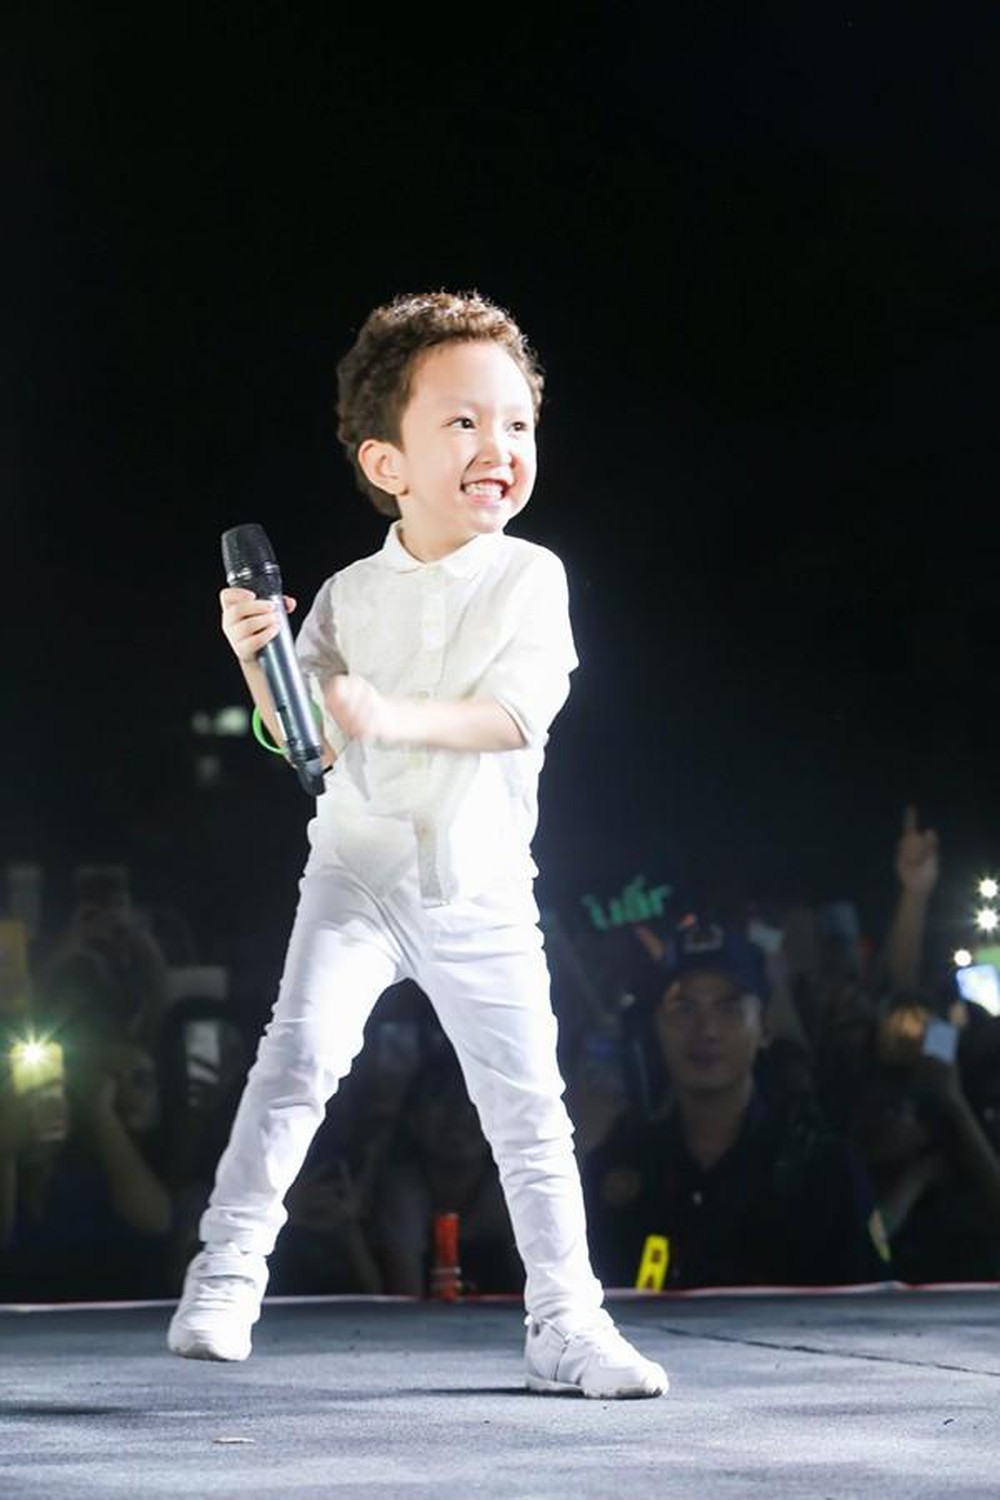  
Chỉ mới 5 tuổi nhưng Su Hào đã sớm bộc lộ sở thích về âm nhạc. (Ảnh: FBNV) - Tin sao Viet - Tin tuc sao Viet - Scandal sao Viet - Tin tuc cua Sao - Tin cua Sao